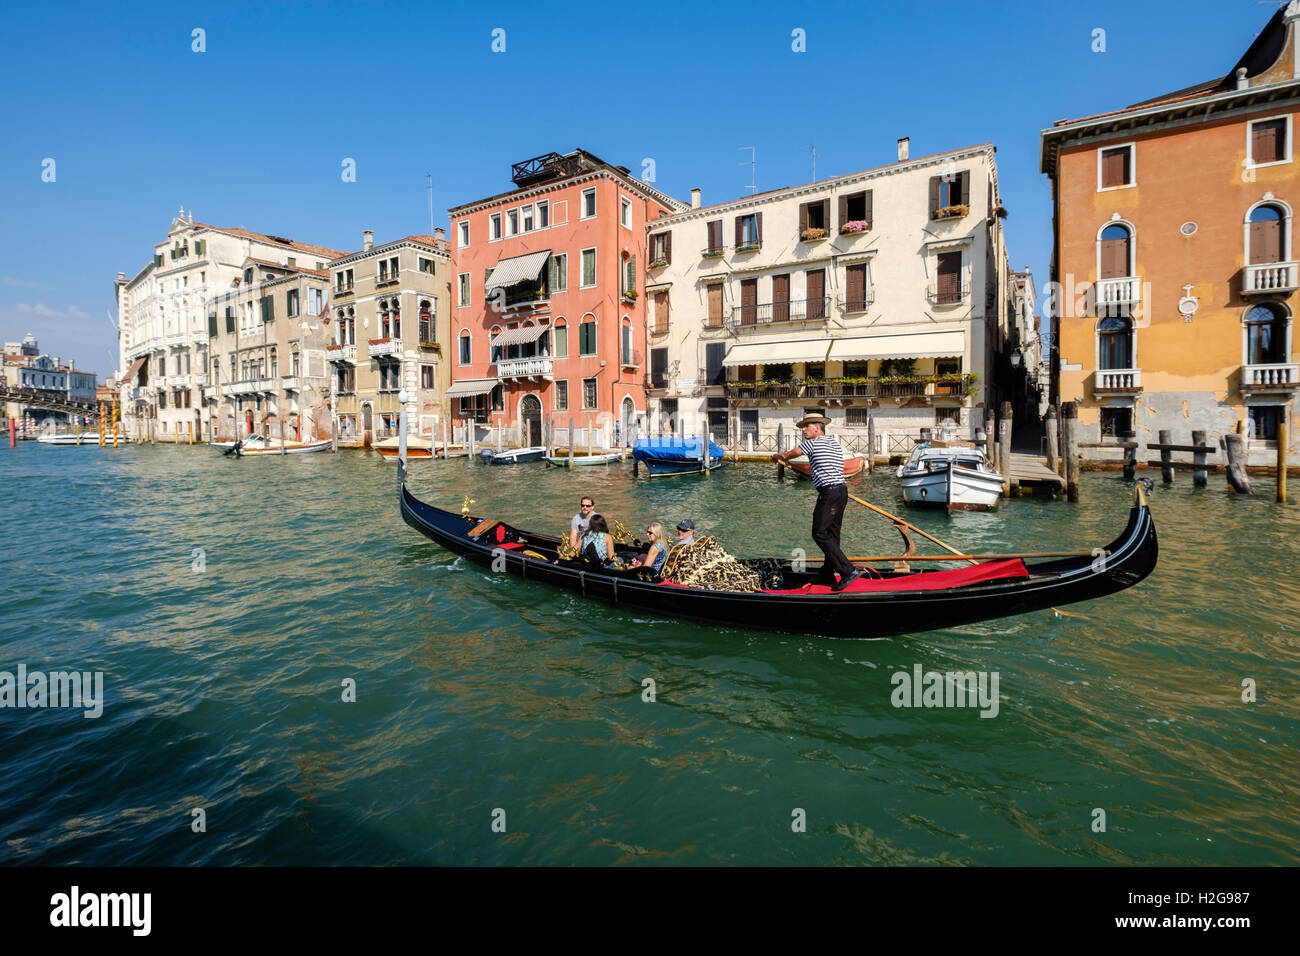 Gondel auf dem Canal Grande mit touristischen Passagieren in Venedig Annäherung an Brücke über den Canal Grande. Ende Sommer, blauer Himmel Stockfoto